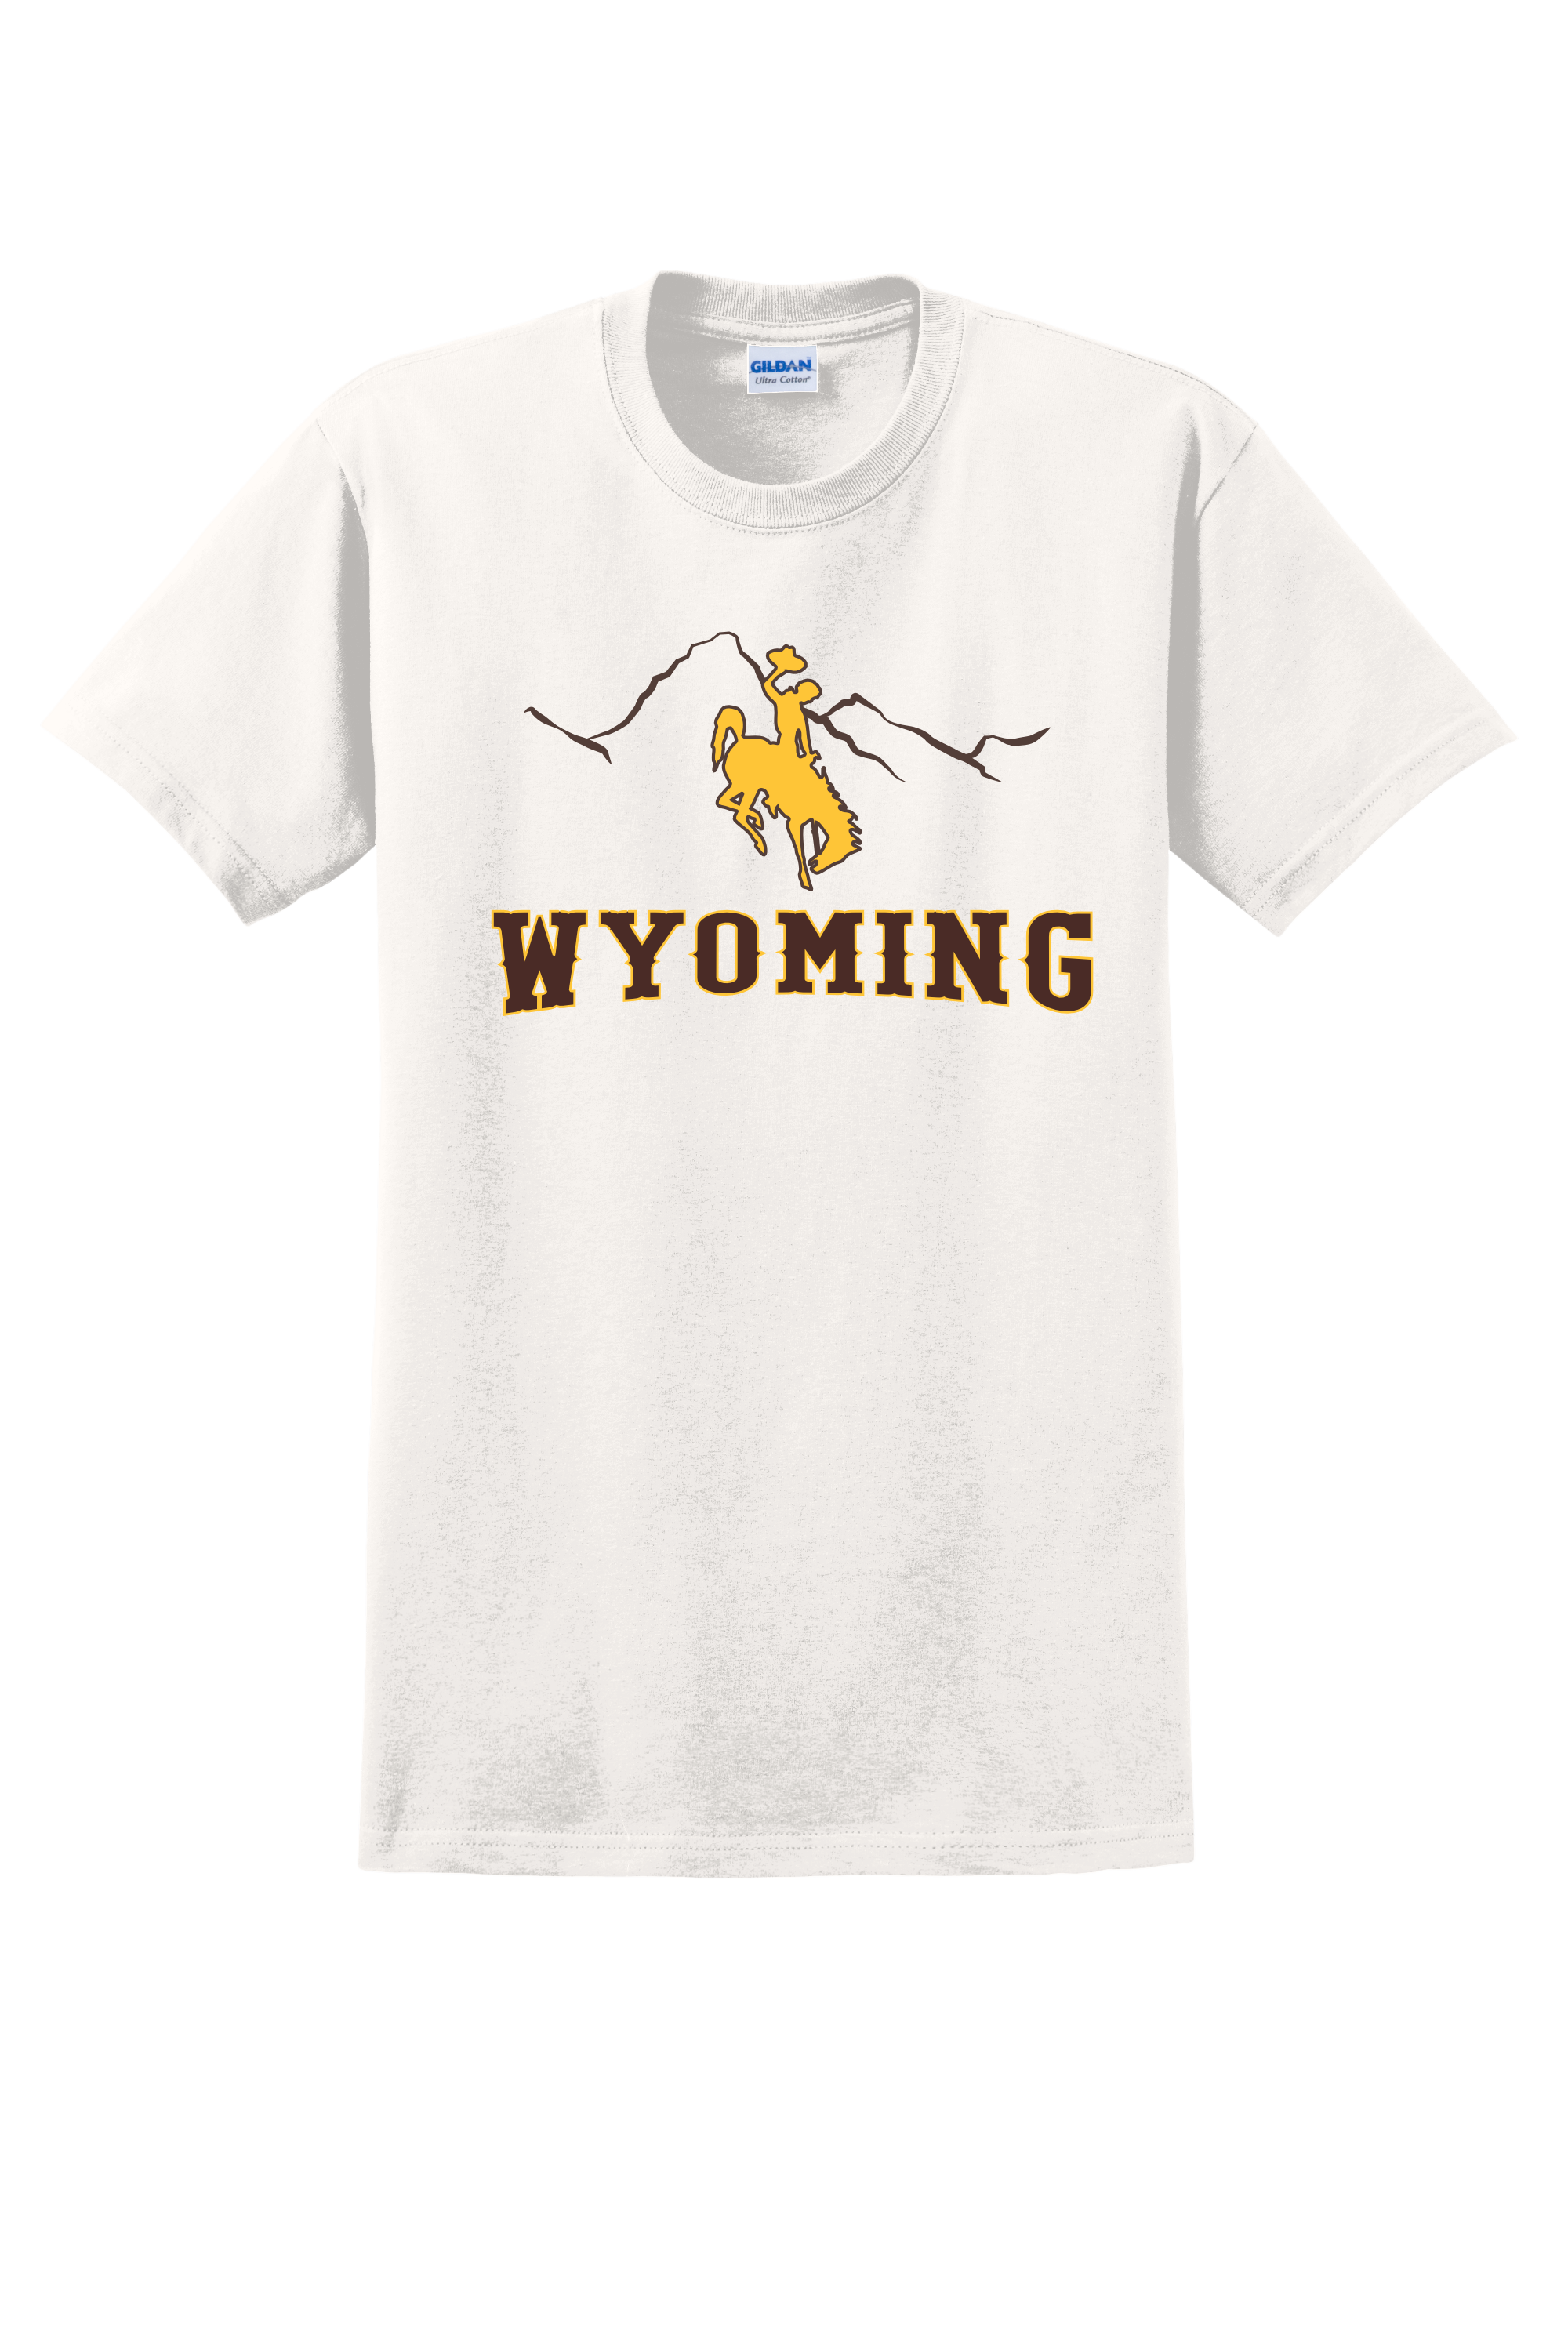 Wyoming Tetons Shirt